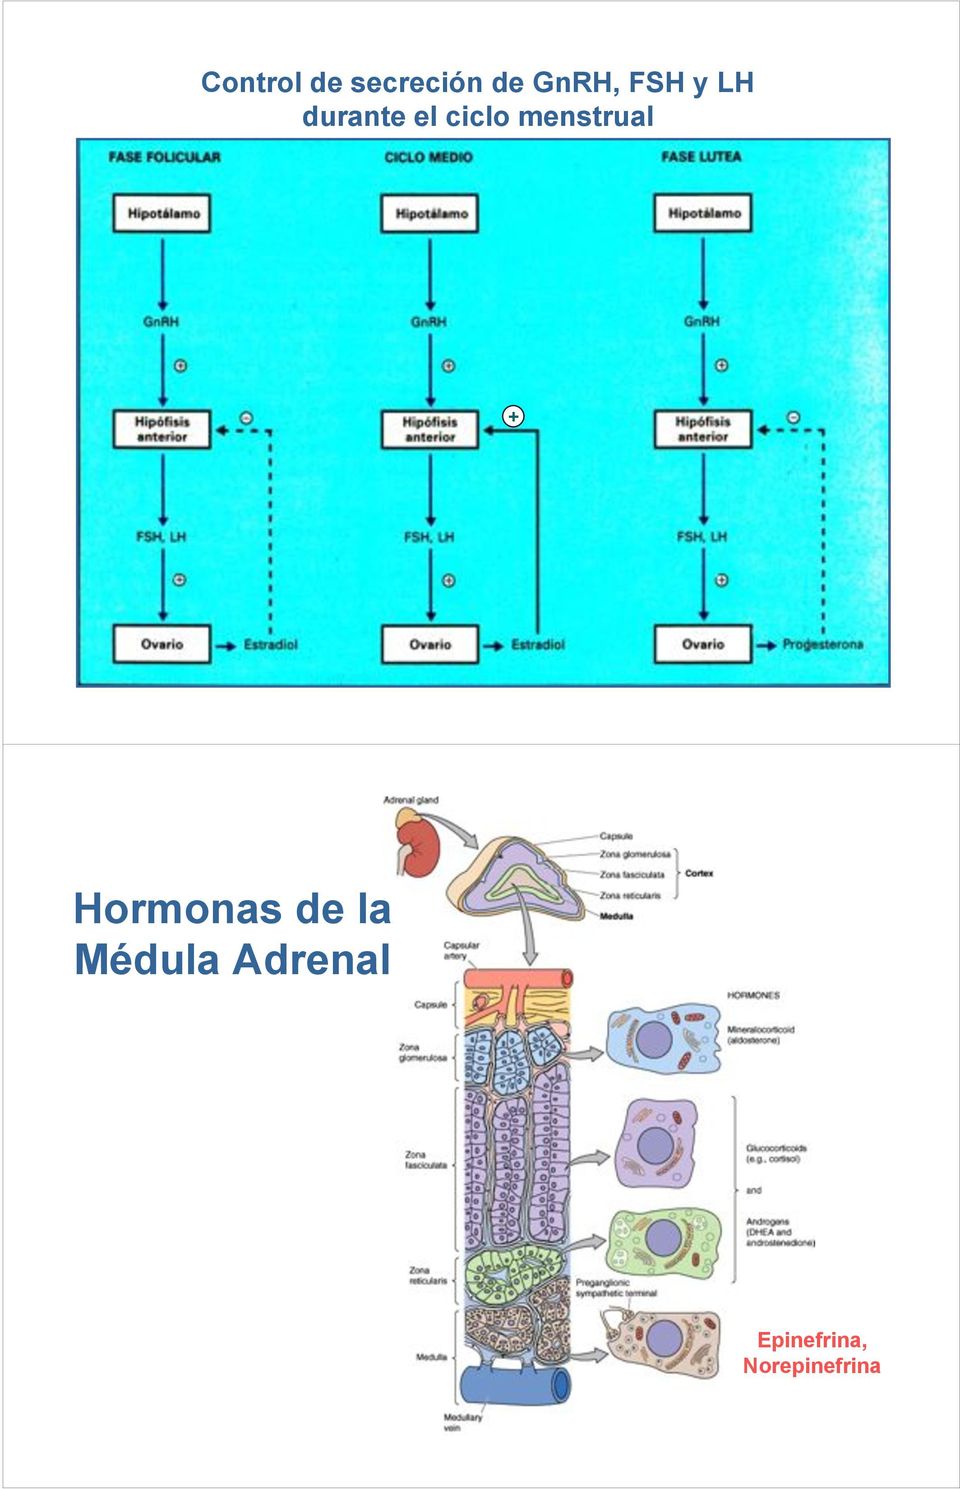 menstrual + Hormonas de la